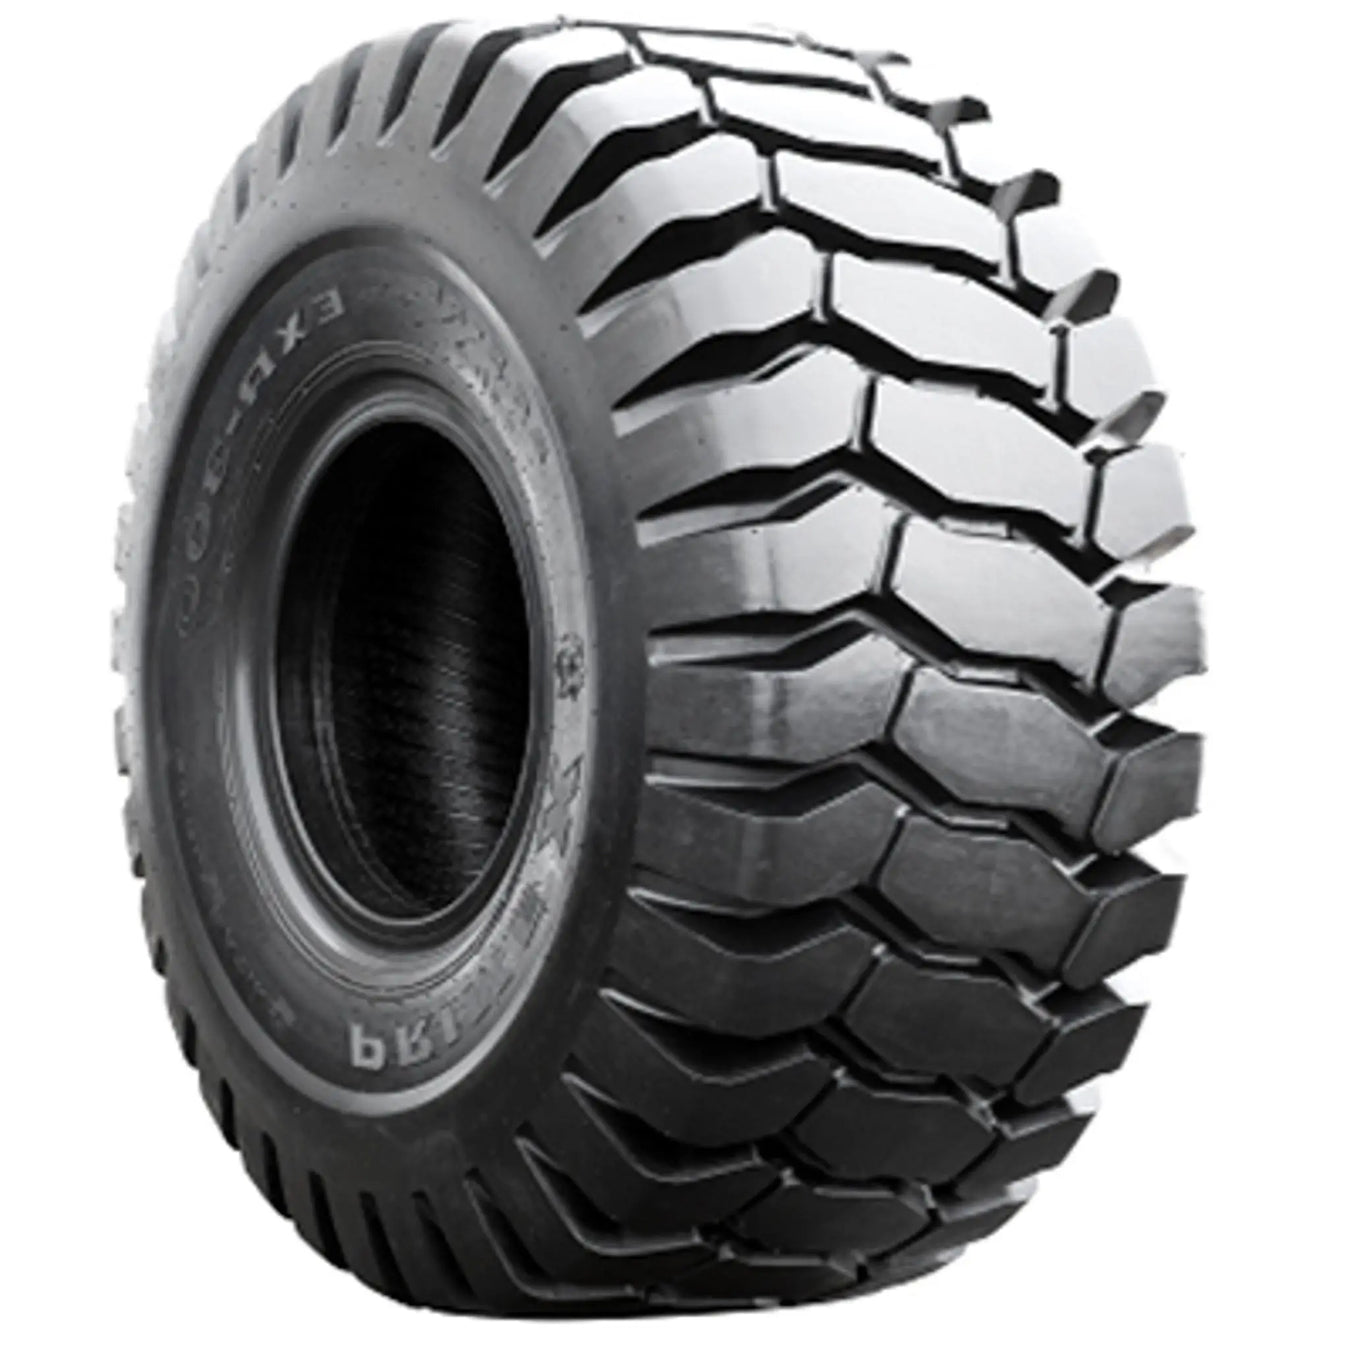 Telehandler Tires - Pneumatic Tire Size - 17.5-25